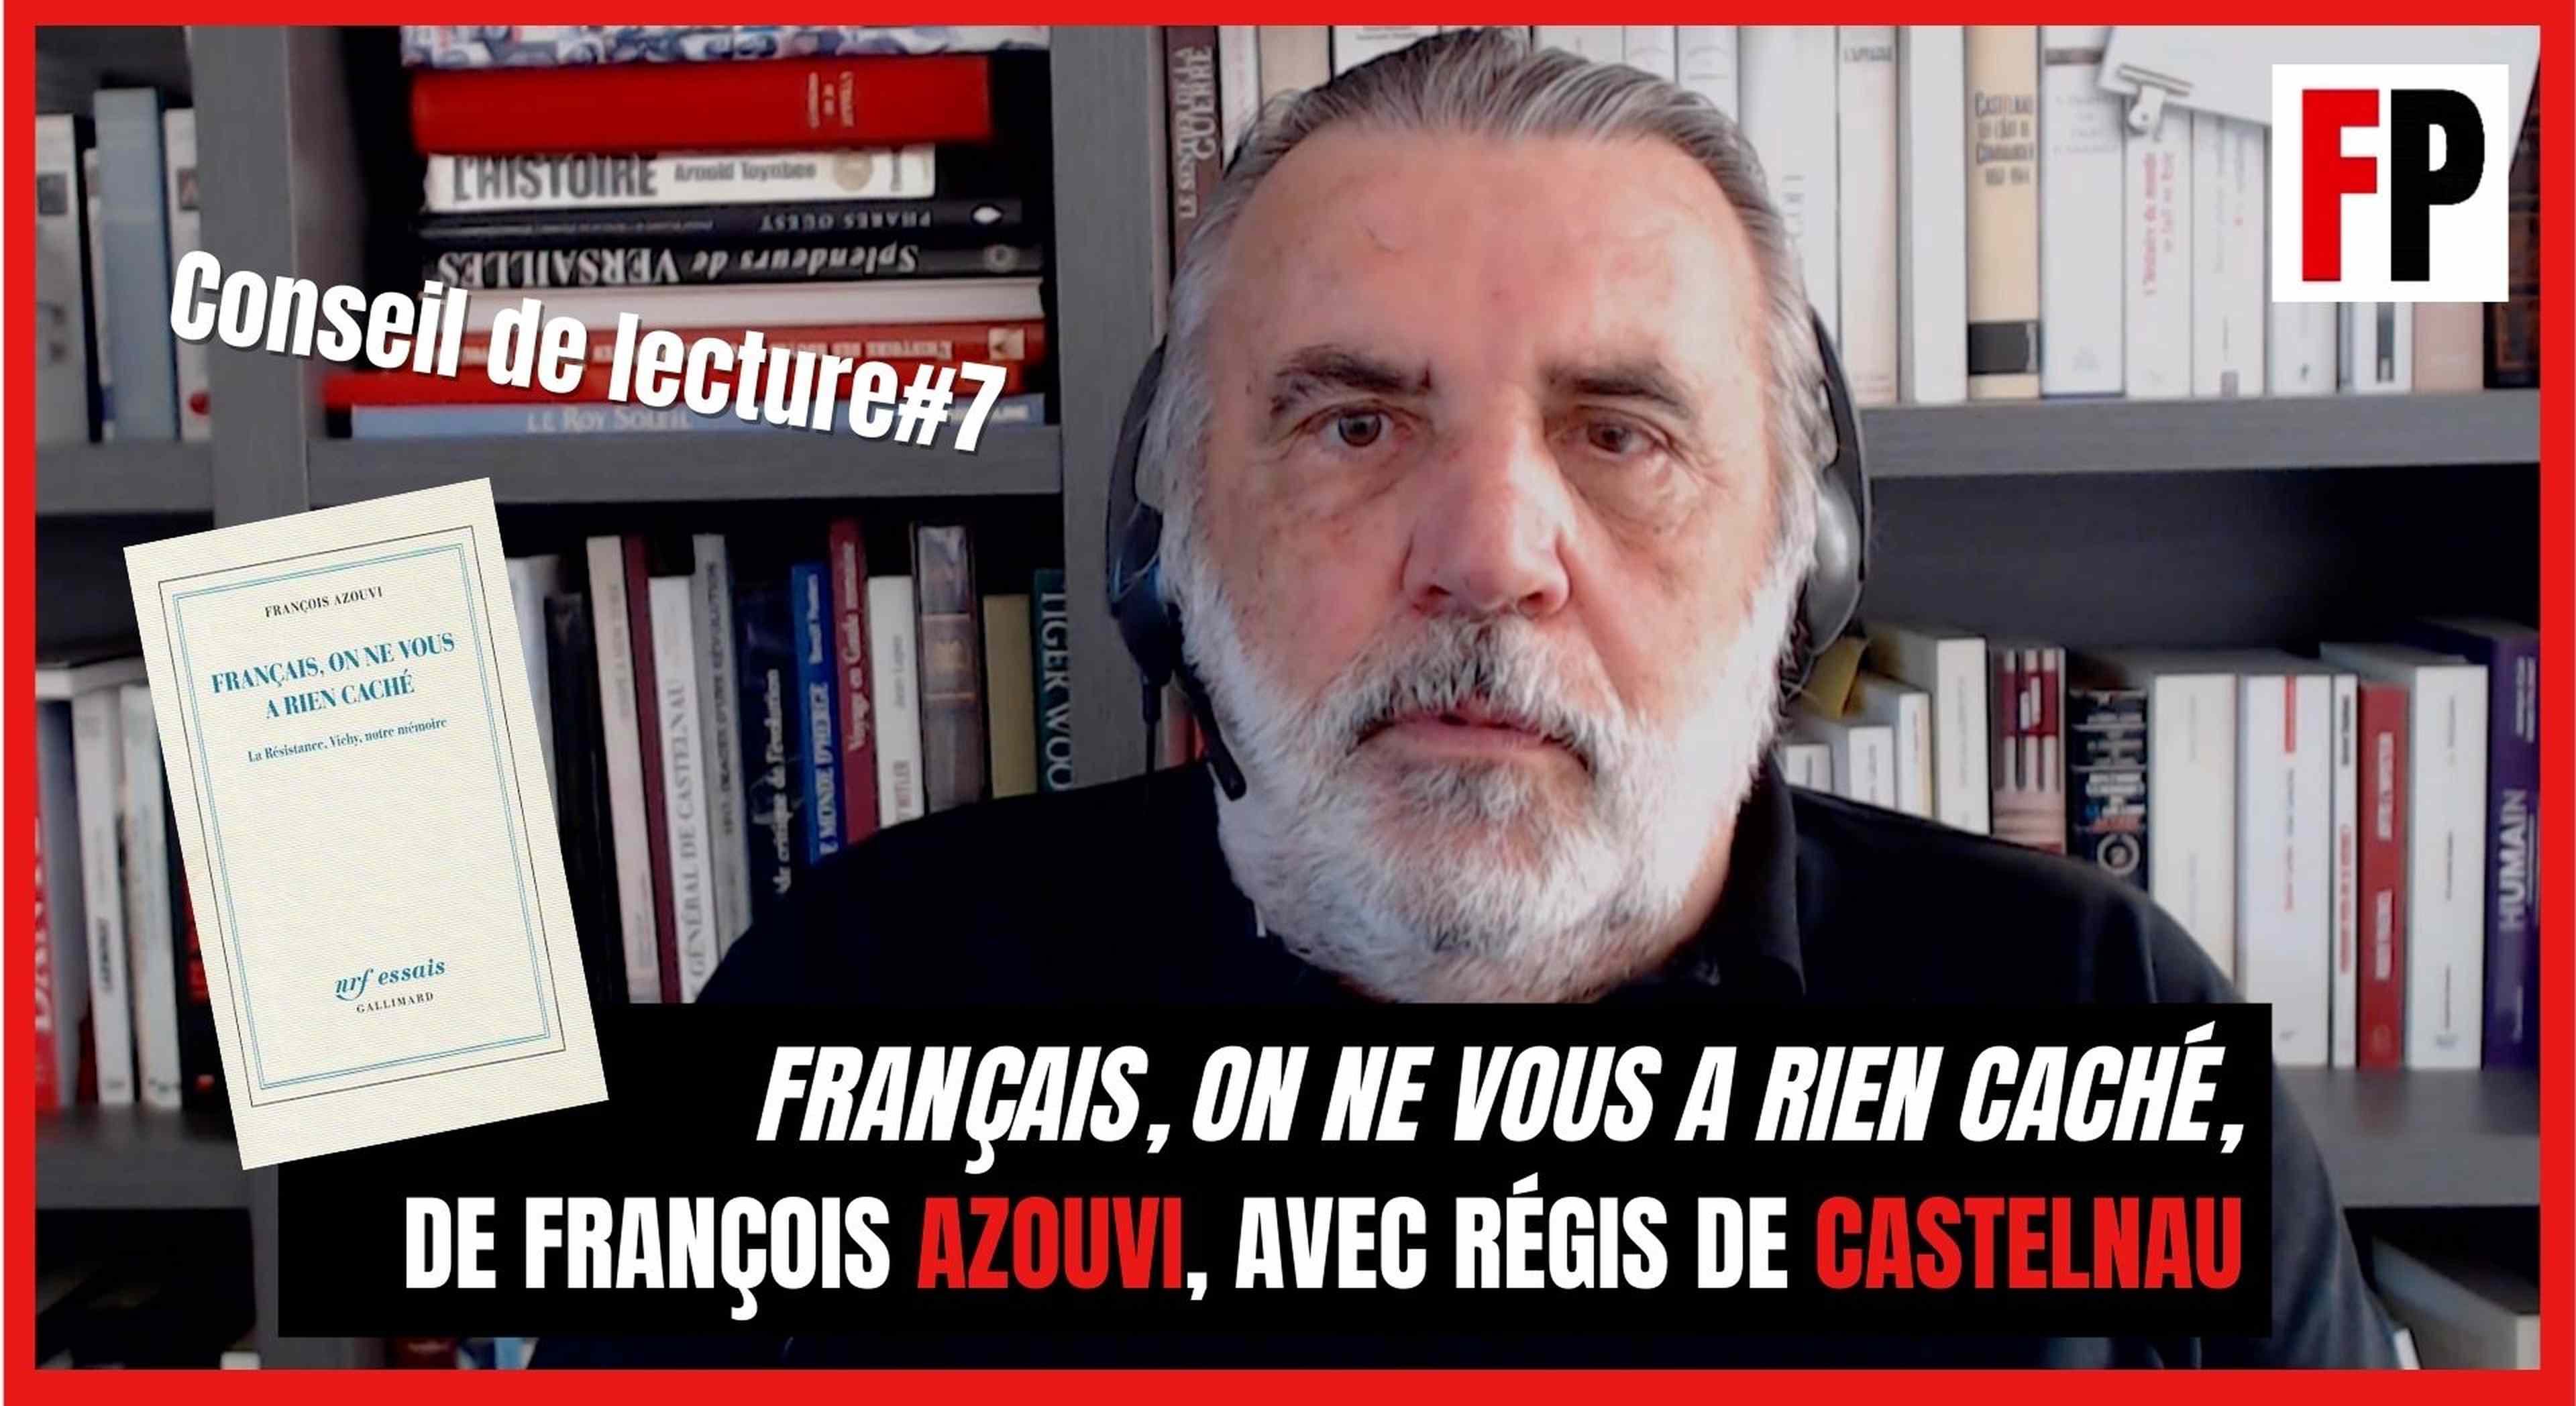 Conseil de lecture #7 : "Français, on ne vous a rien caché", avec Régis de Castelnau